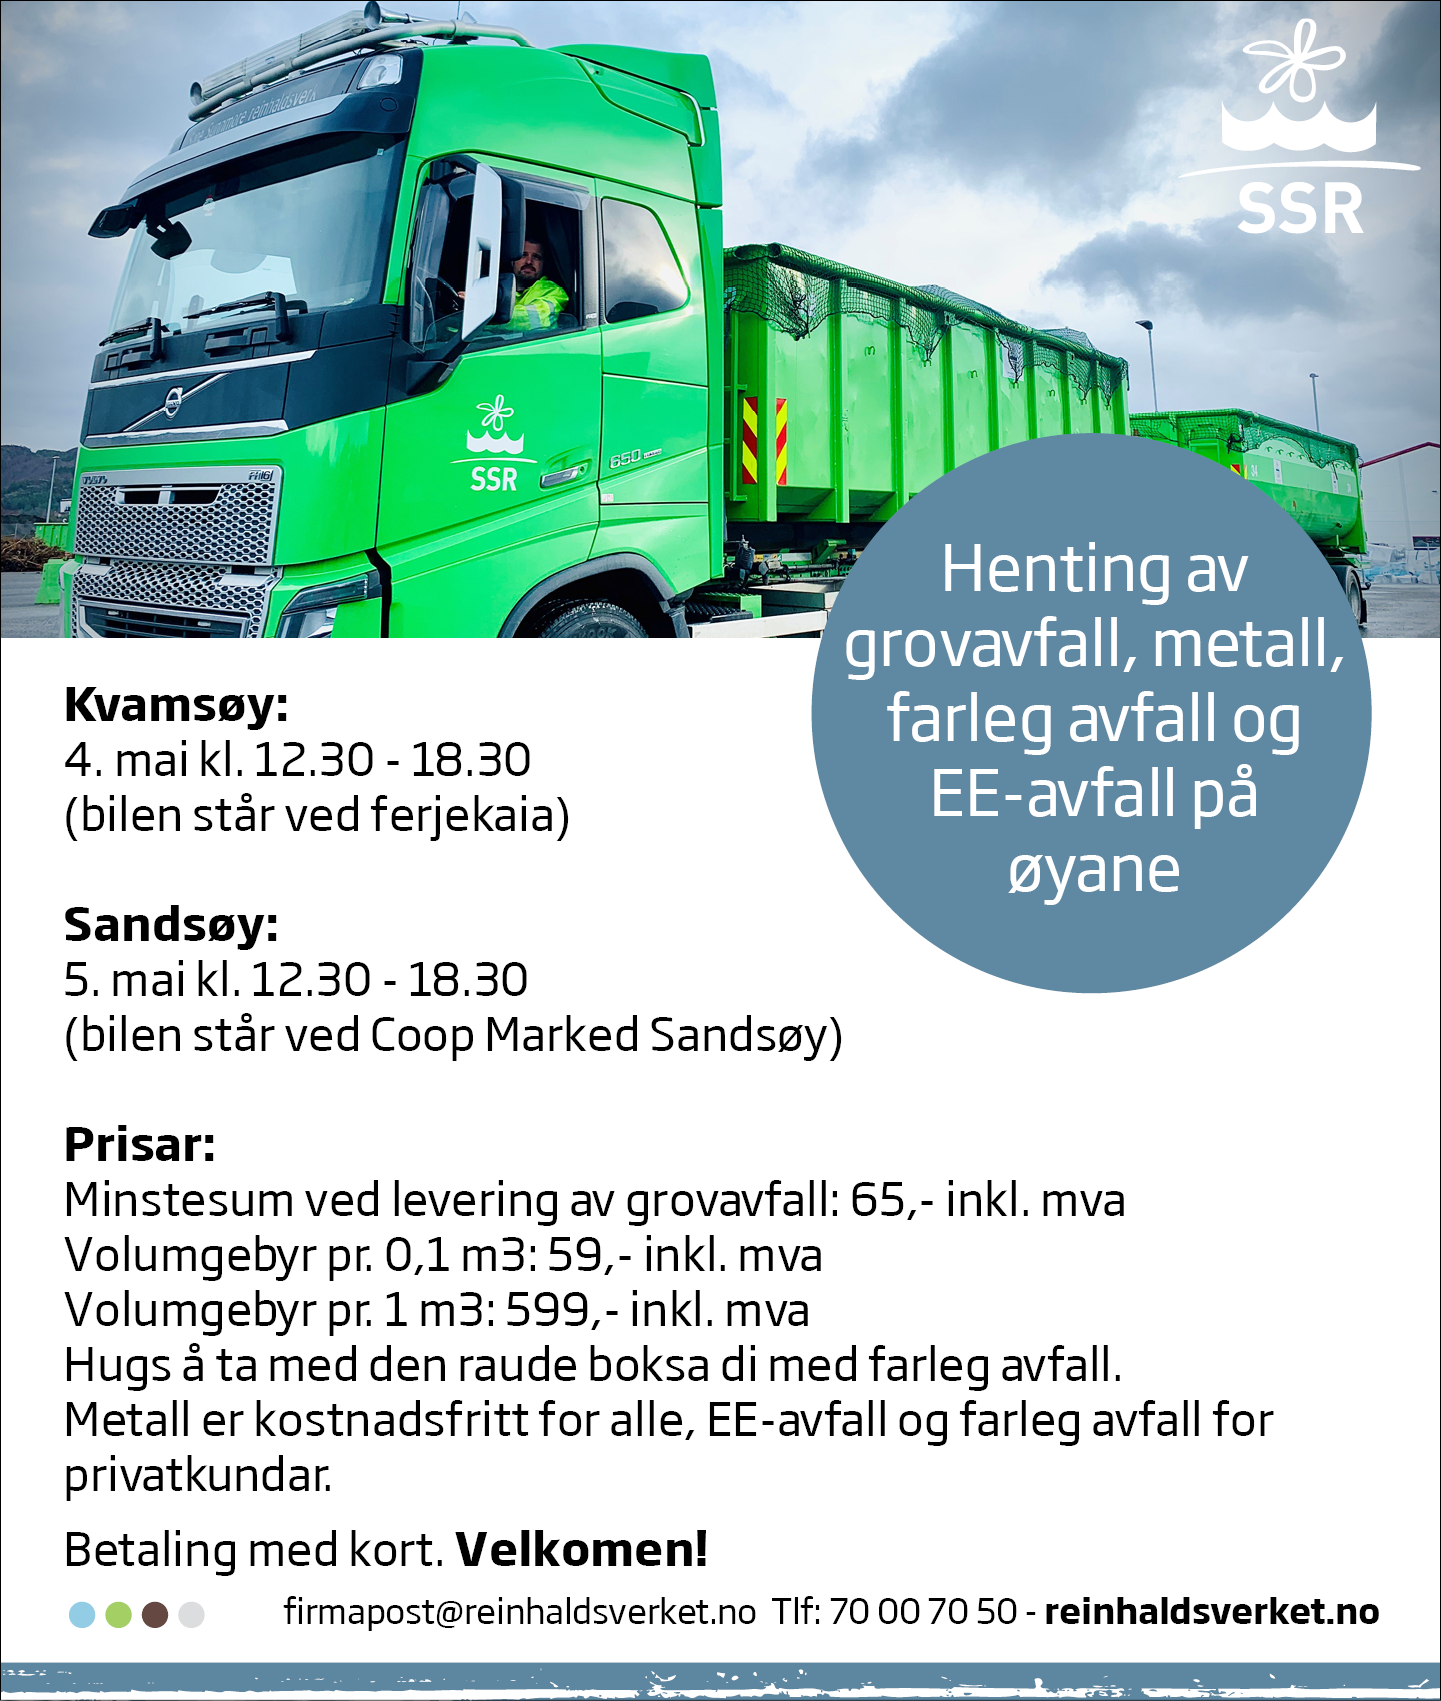 Annonse som viser dato for grovavfallshenting på Kvamsøy og Sandsøy. Bilde av lastebil, tekst med datoer og klokkeslett.